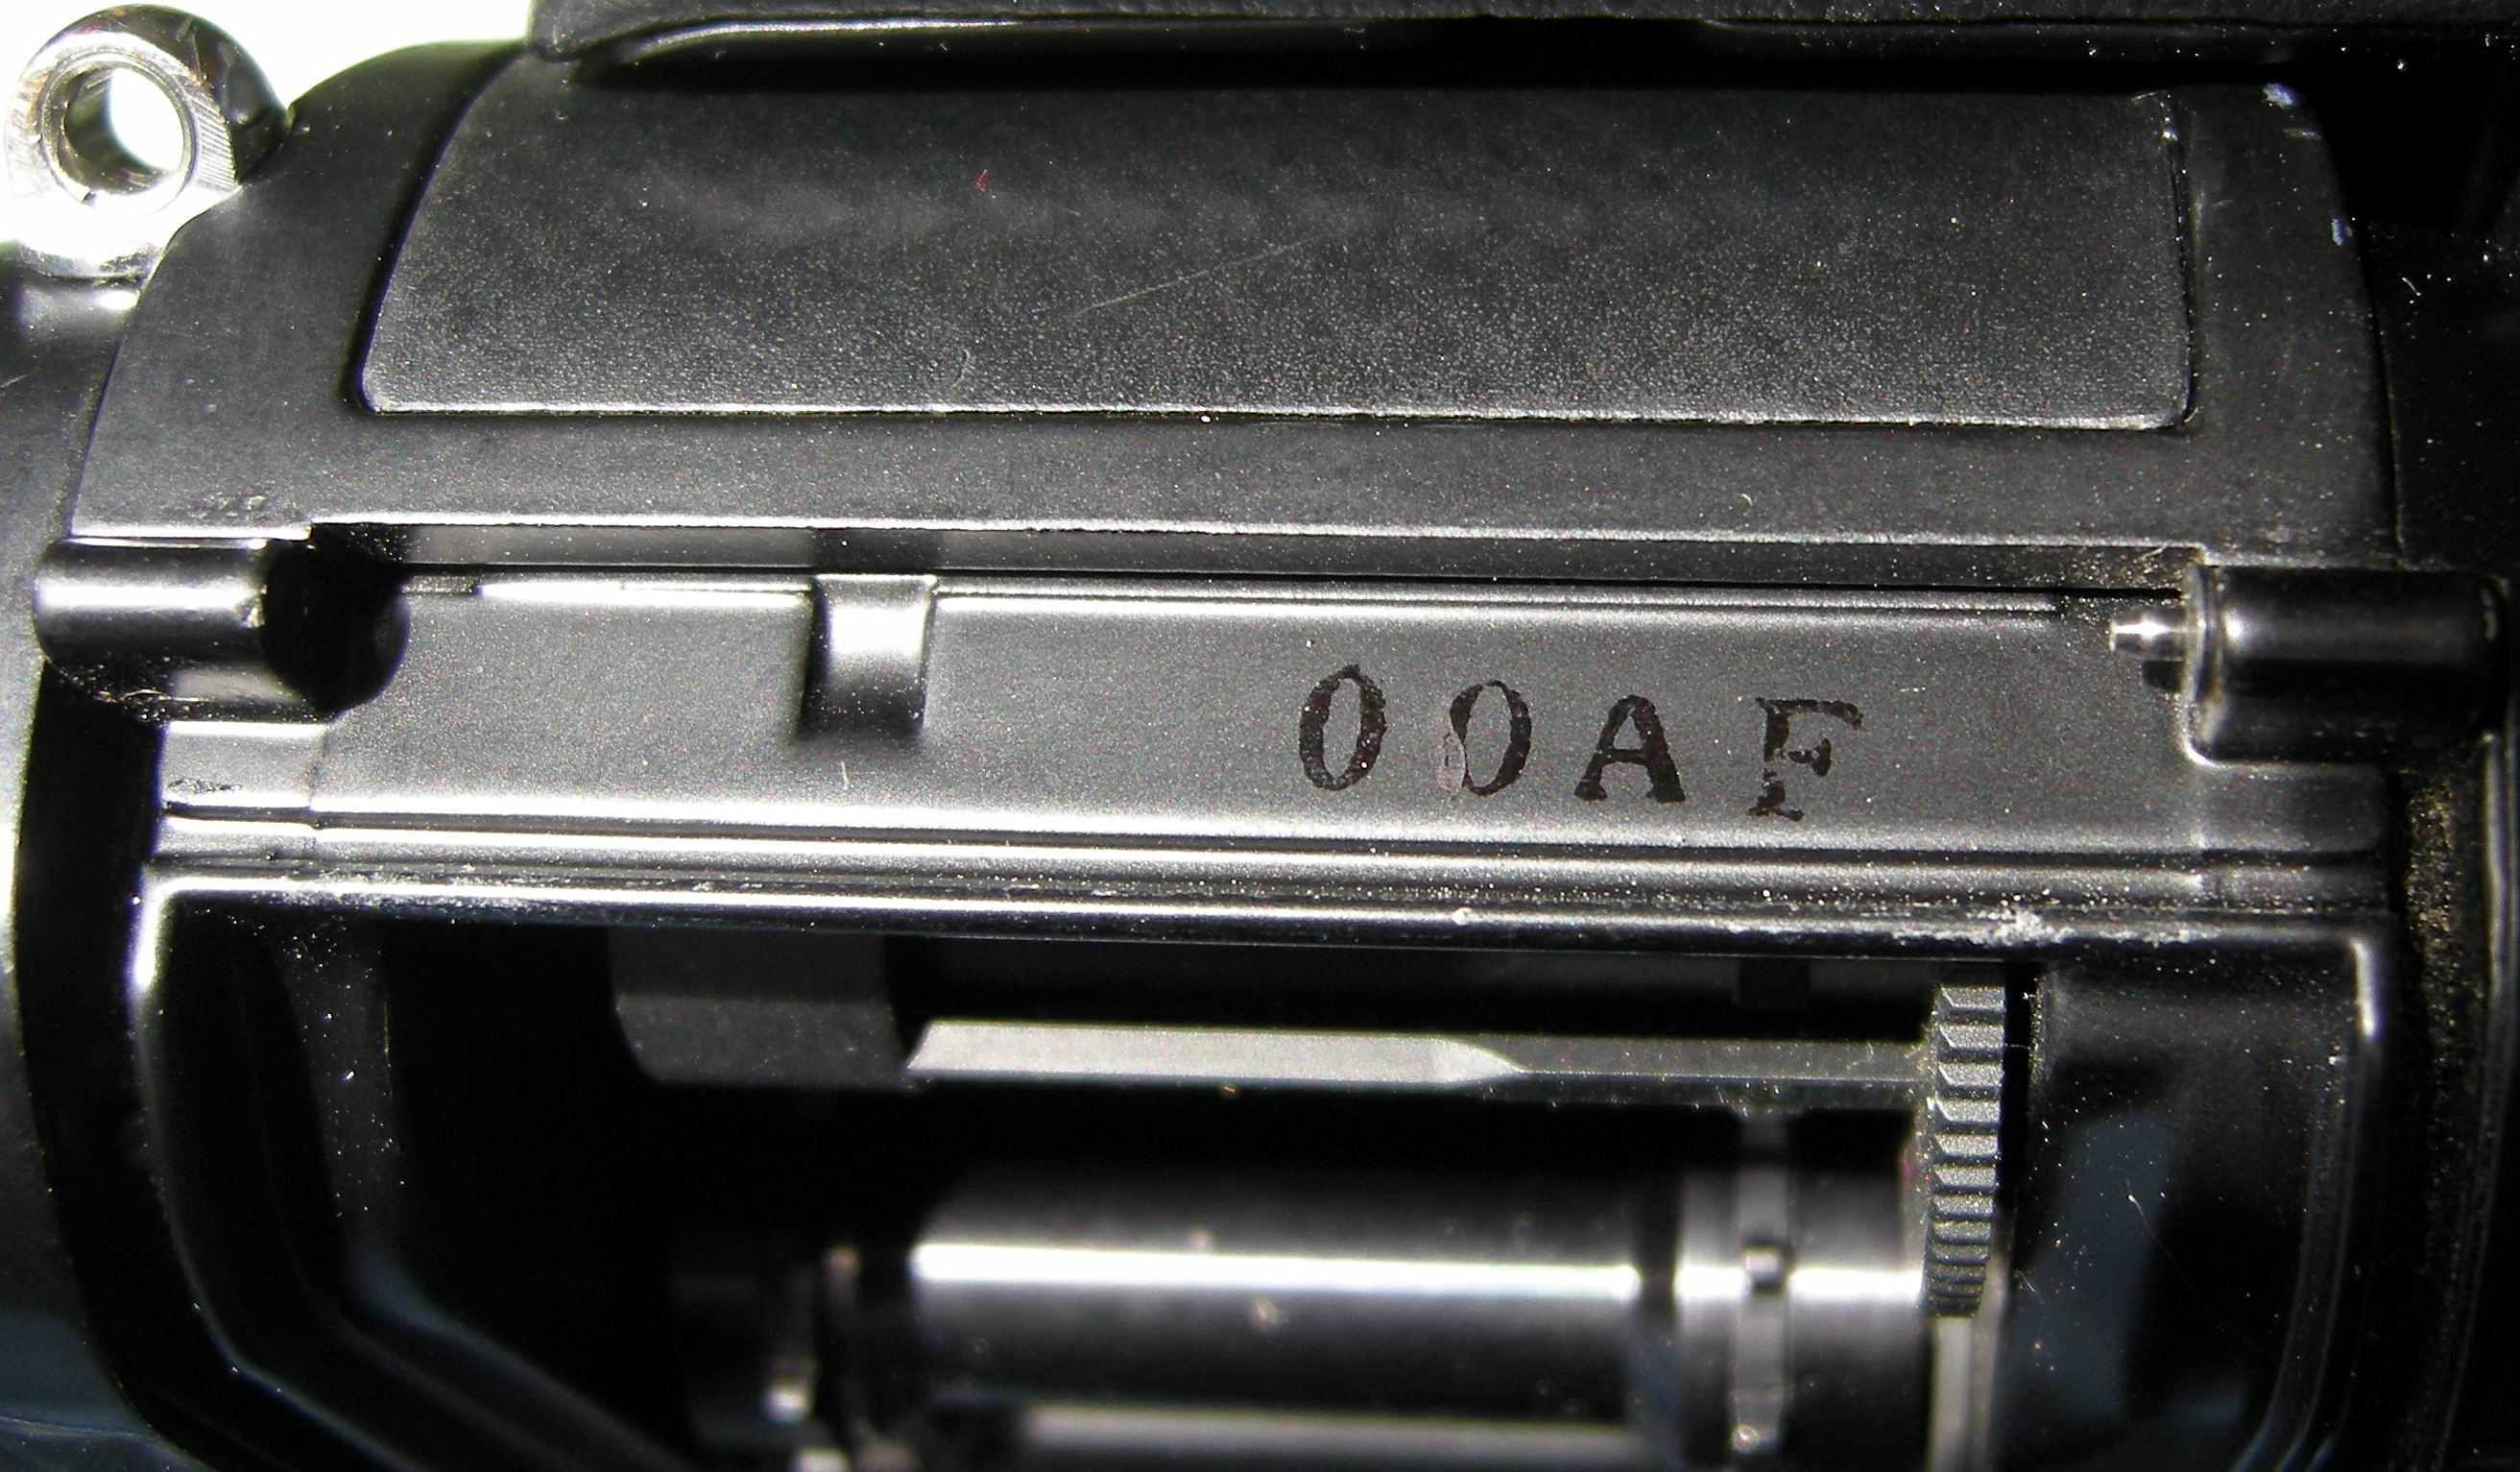 Nikon F3 serial numbers